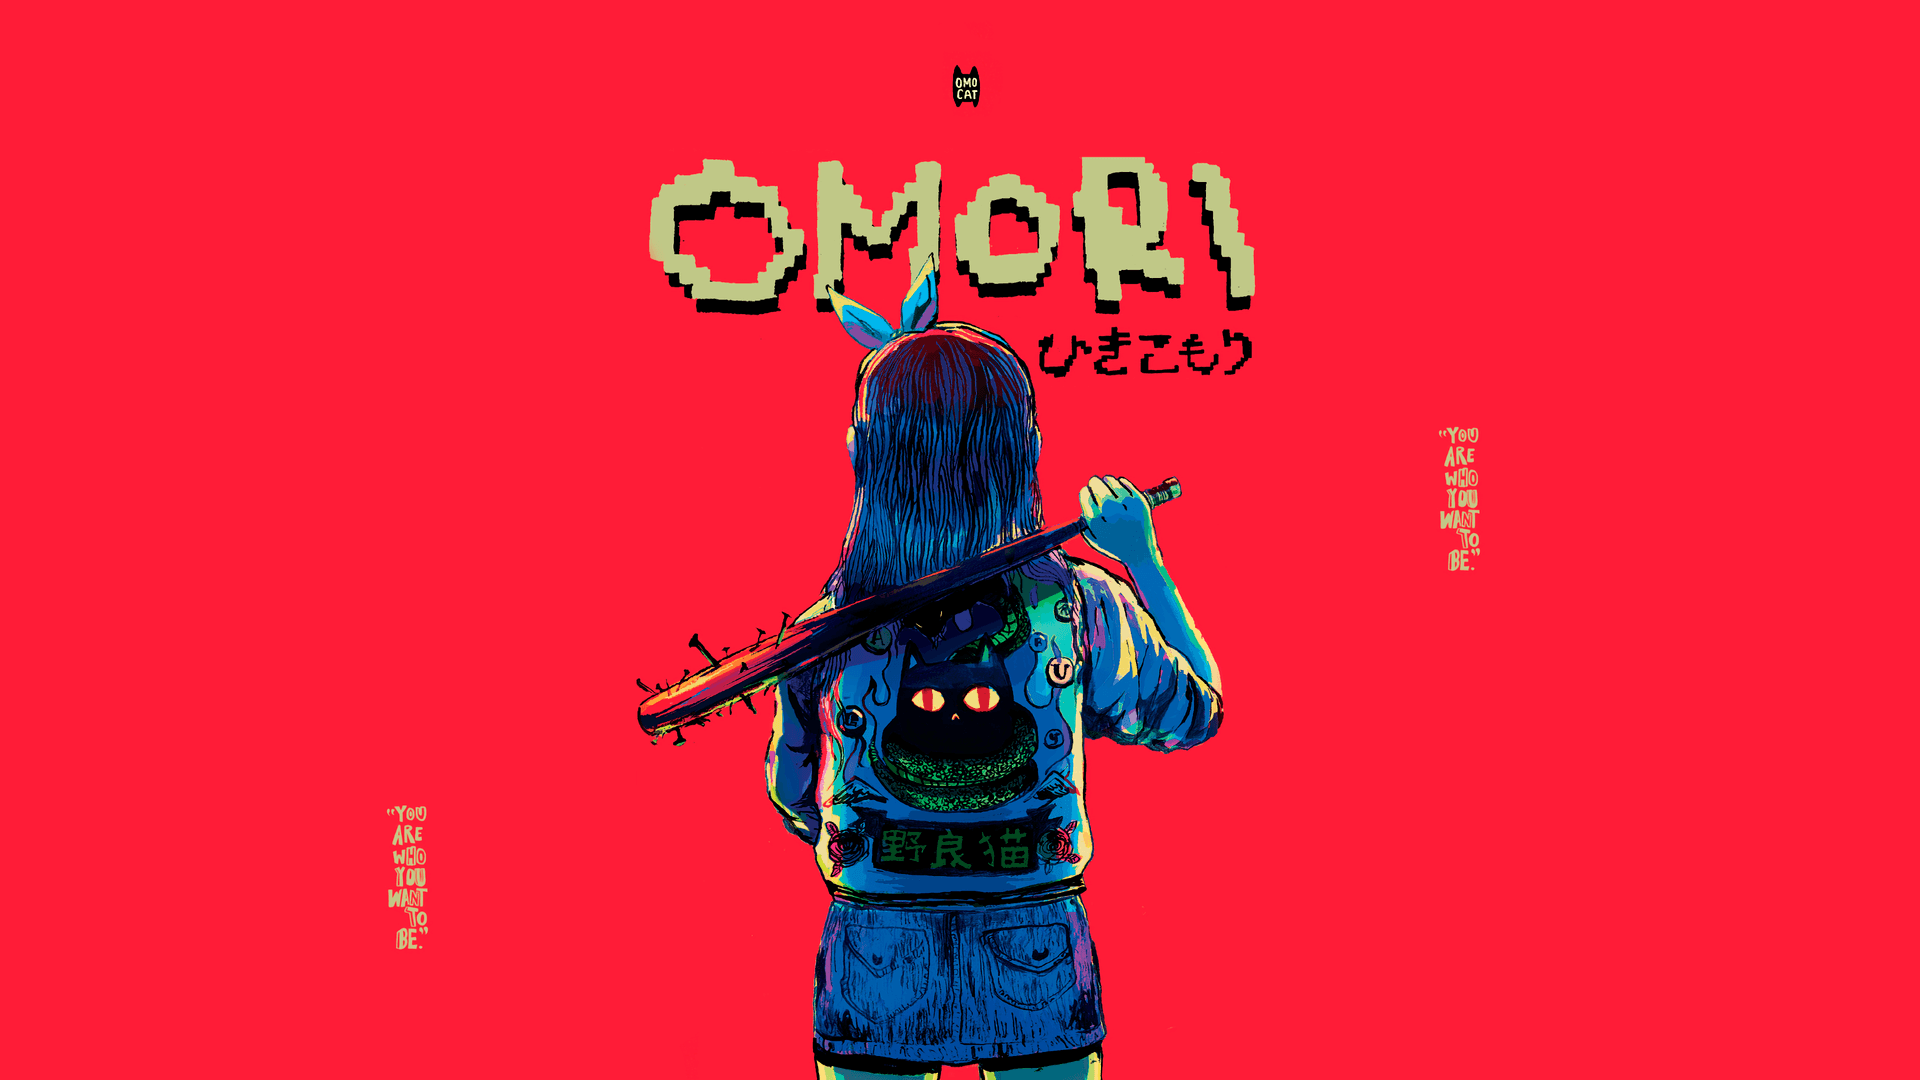 200+] Omori Wallpapers